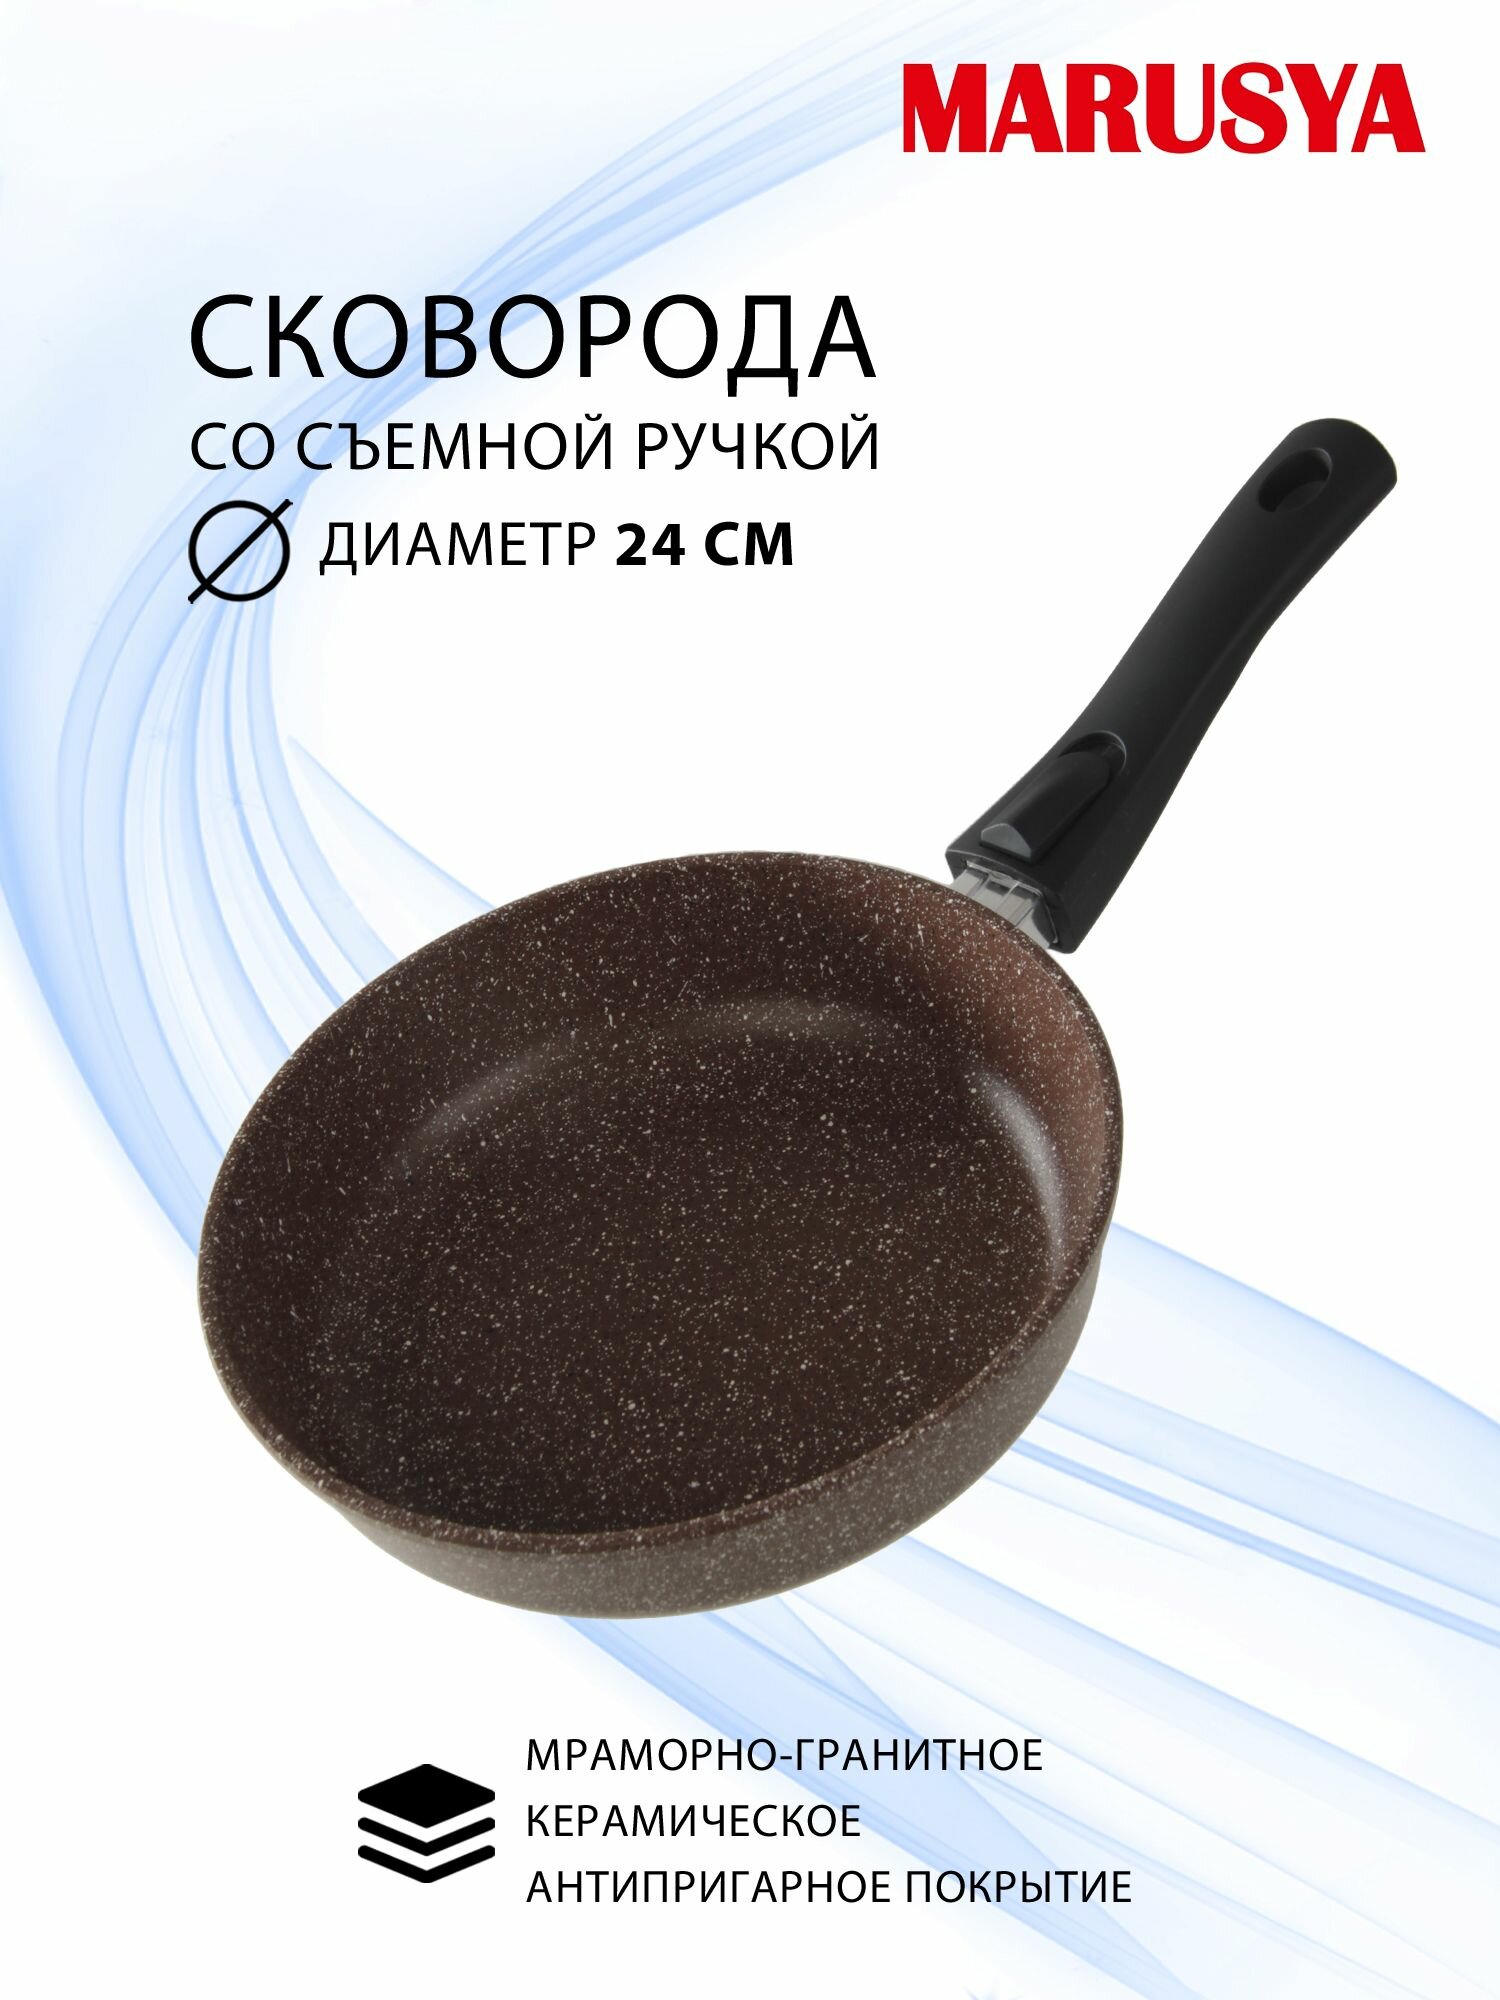 Сковорода 24 см глубокая с антипригарным покрытием GREBLON со съемной бакелитовой ручкой MARUSYA